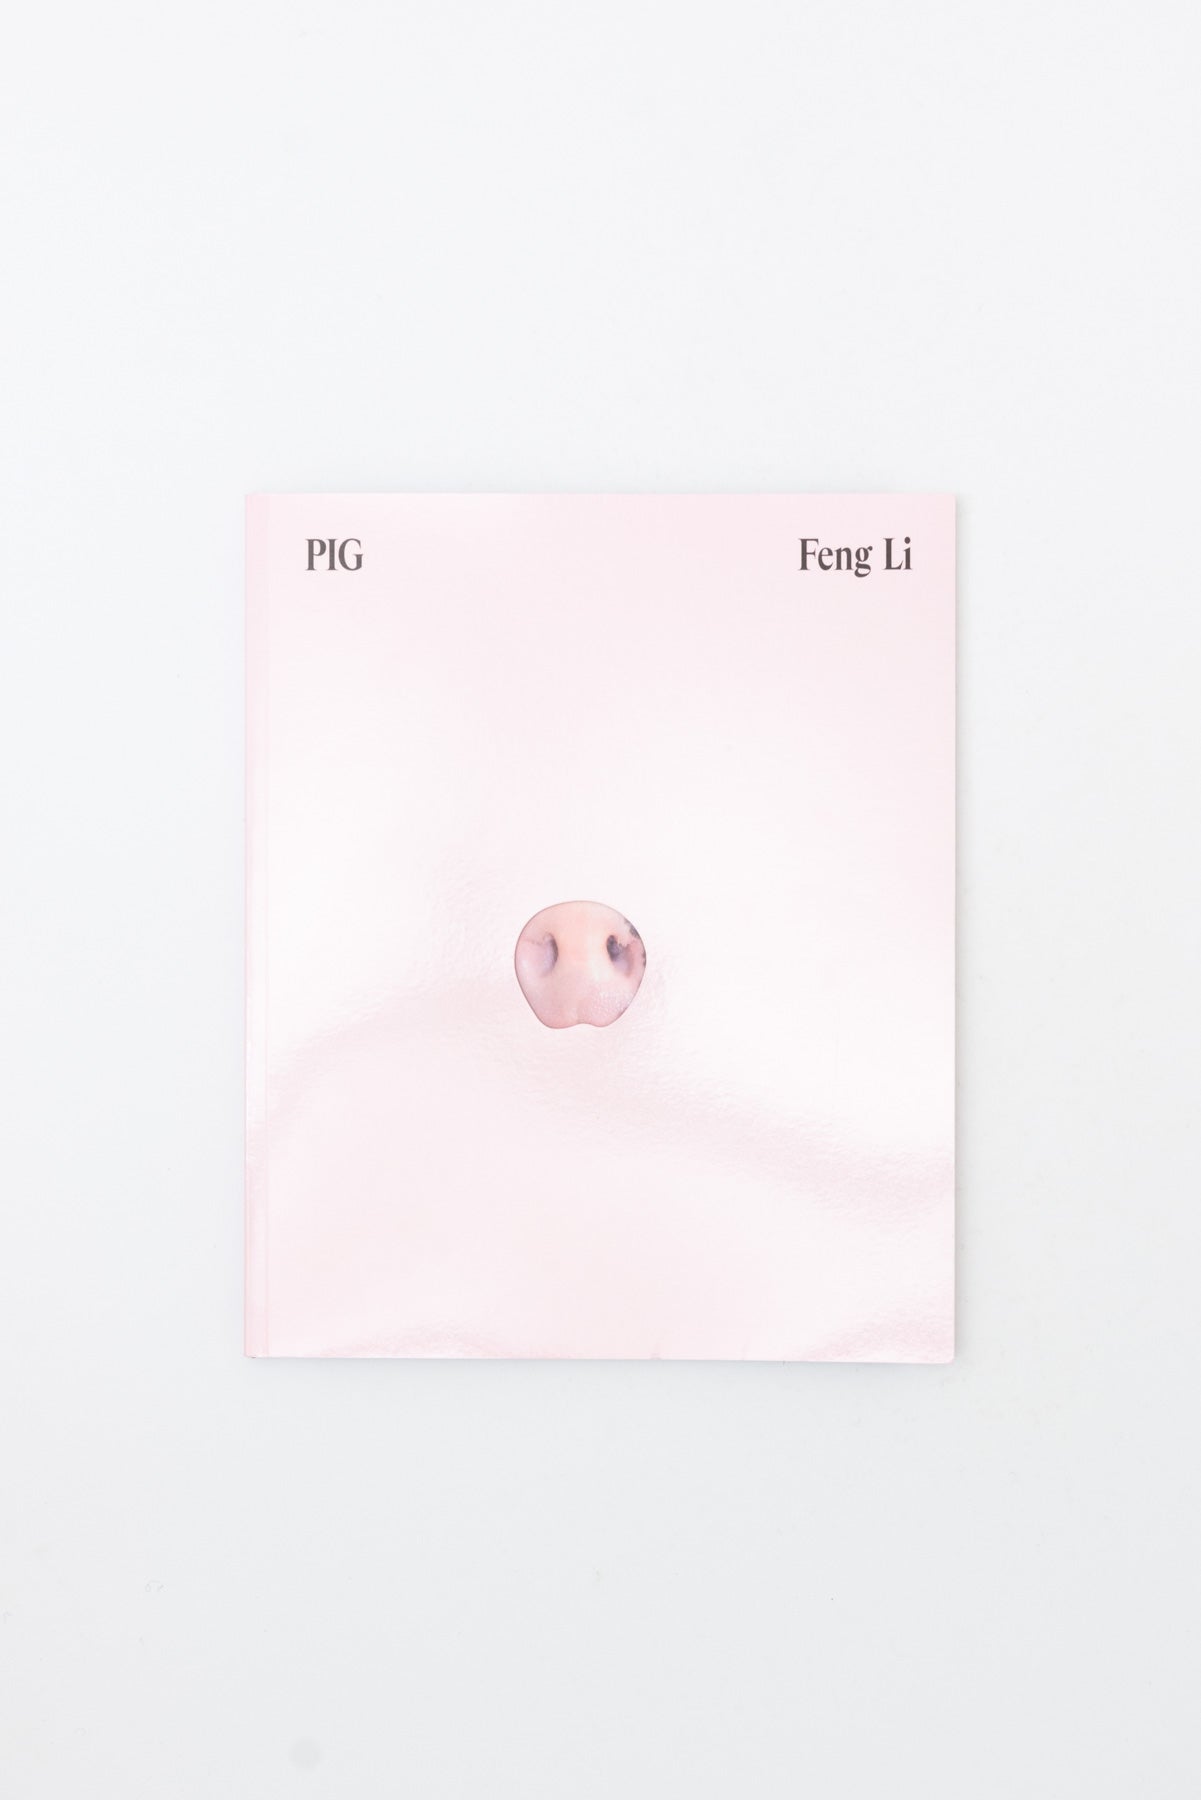 Pig - Feng Li